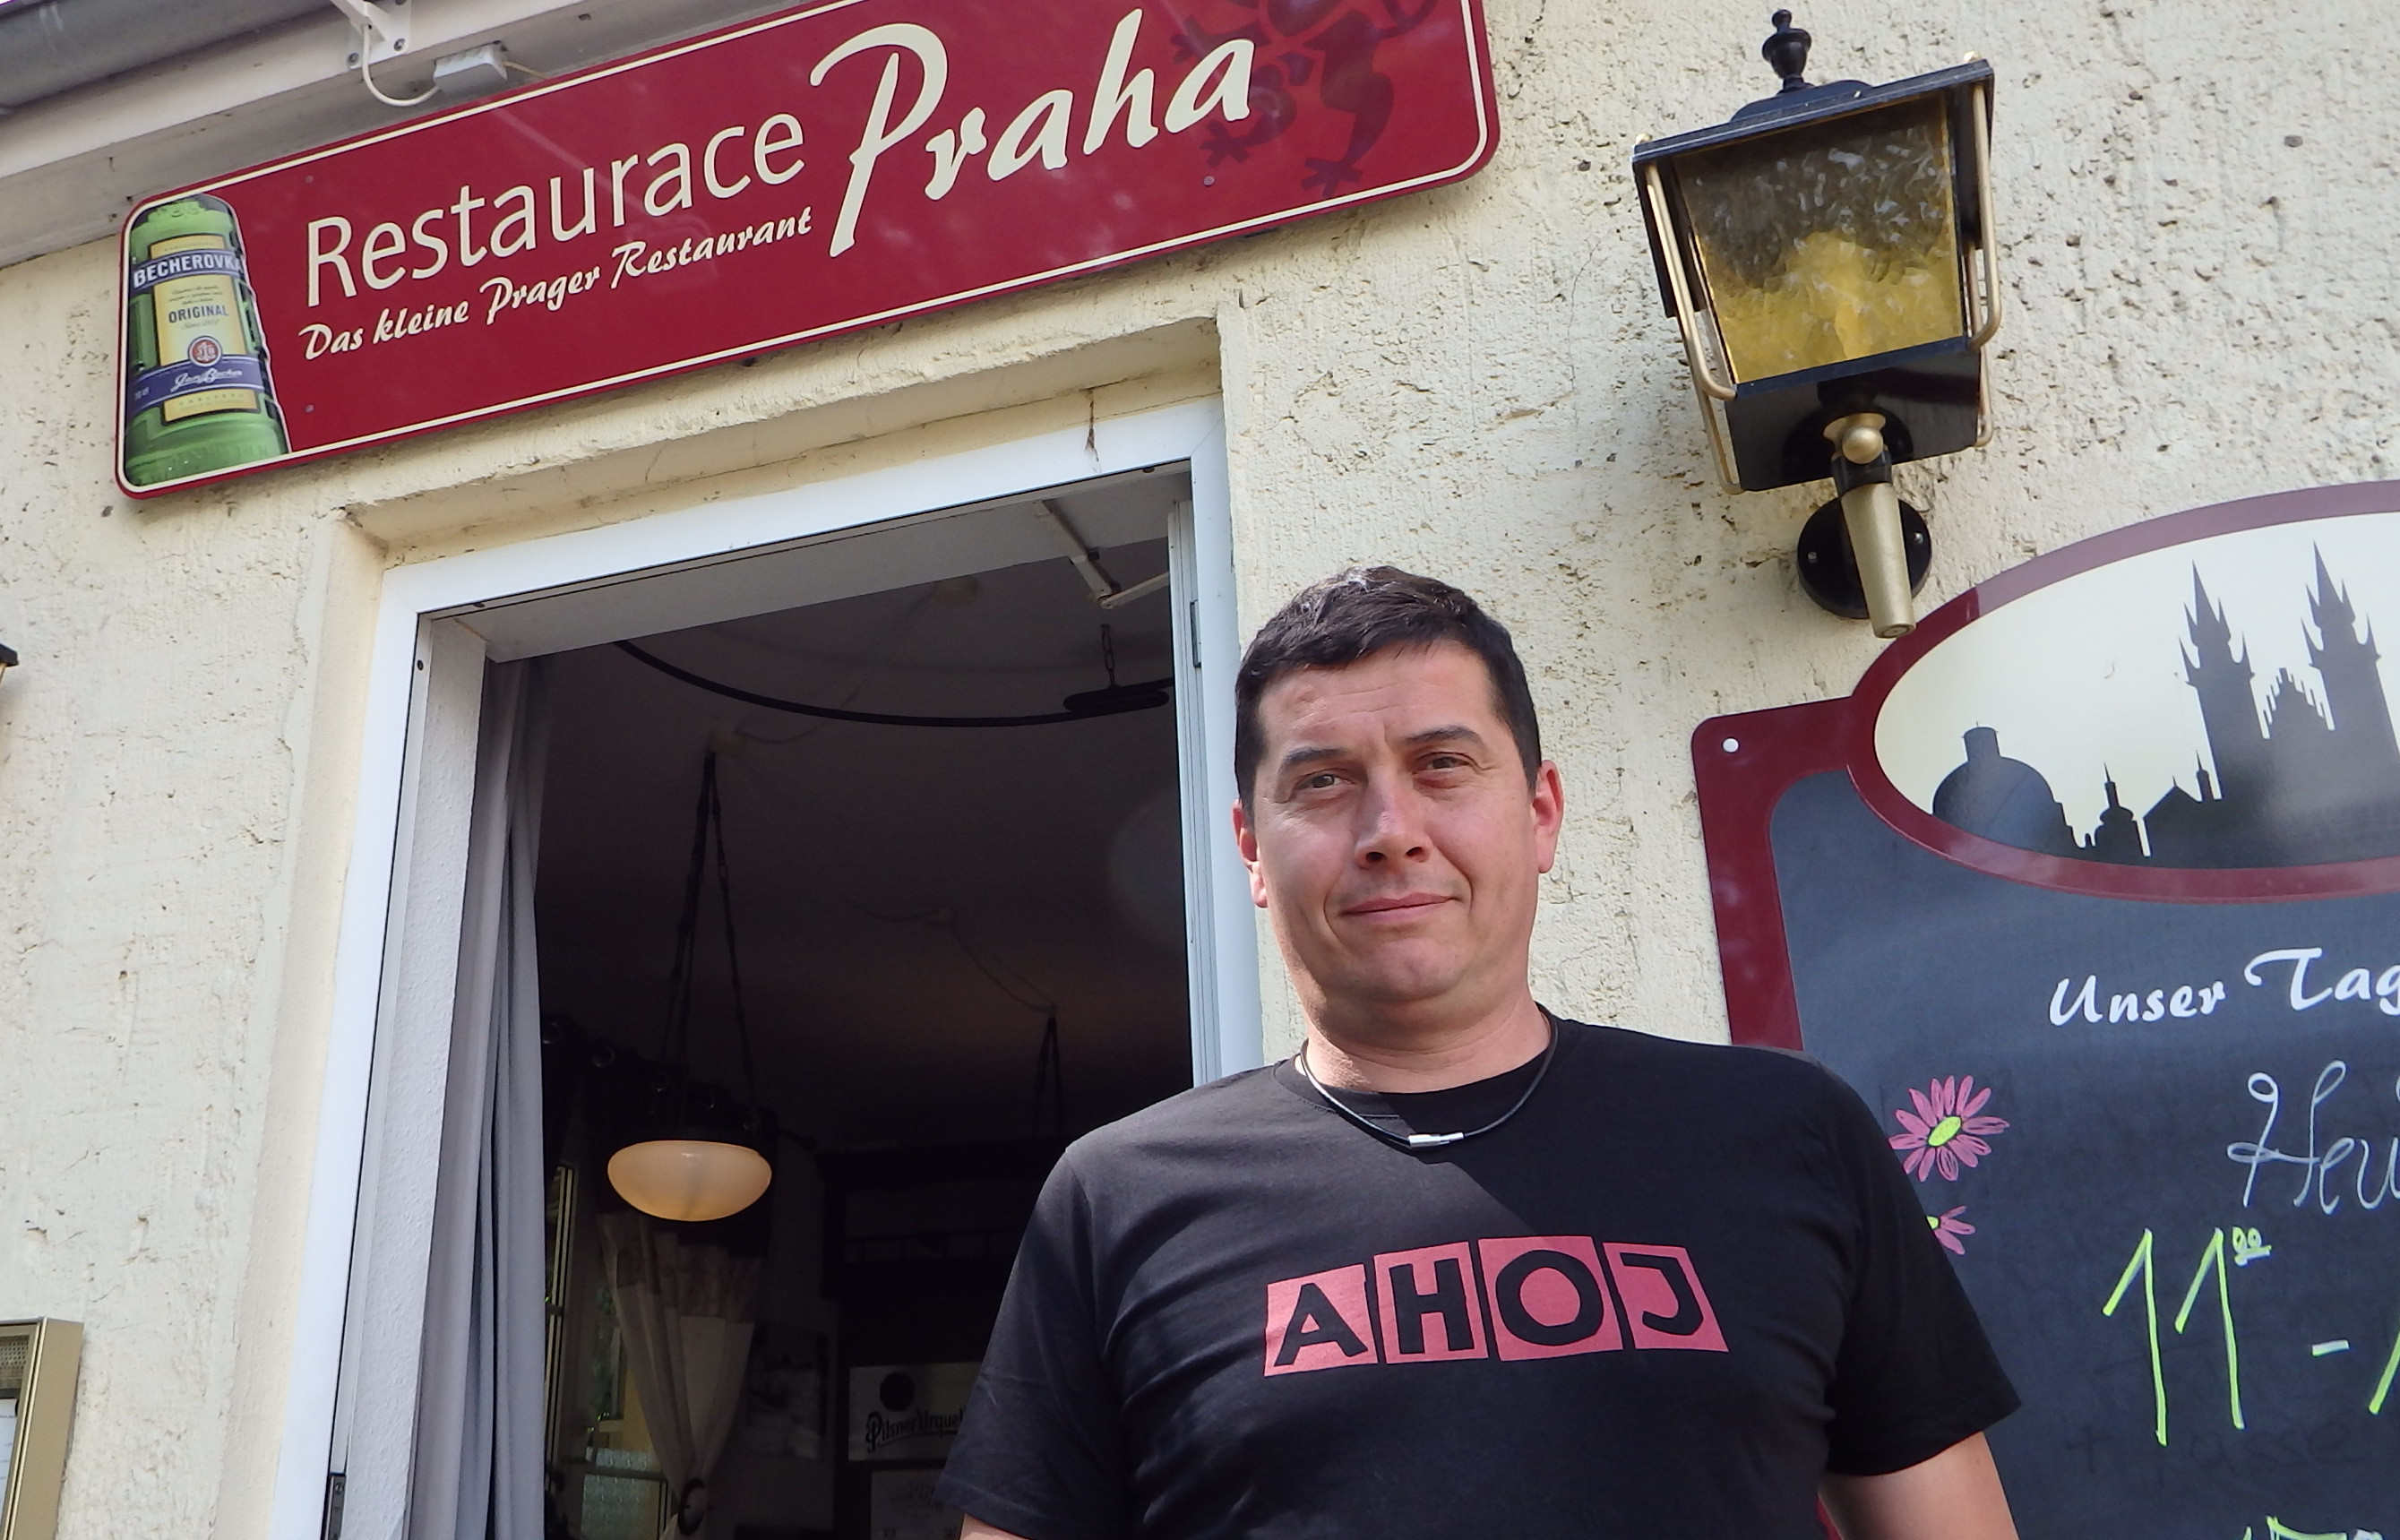 Jean-Pierre Paszkier, Inhaber des Restaurace Praha. Die tschechische Begrüßung auf dem T-Shirt müssen wir sicher nicht übersetzen.